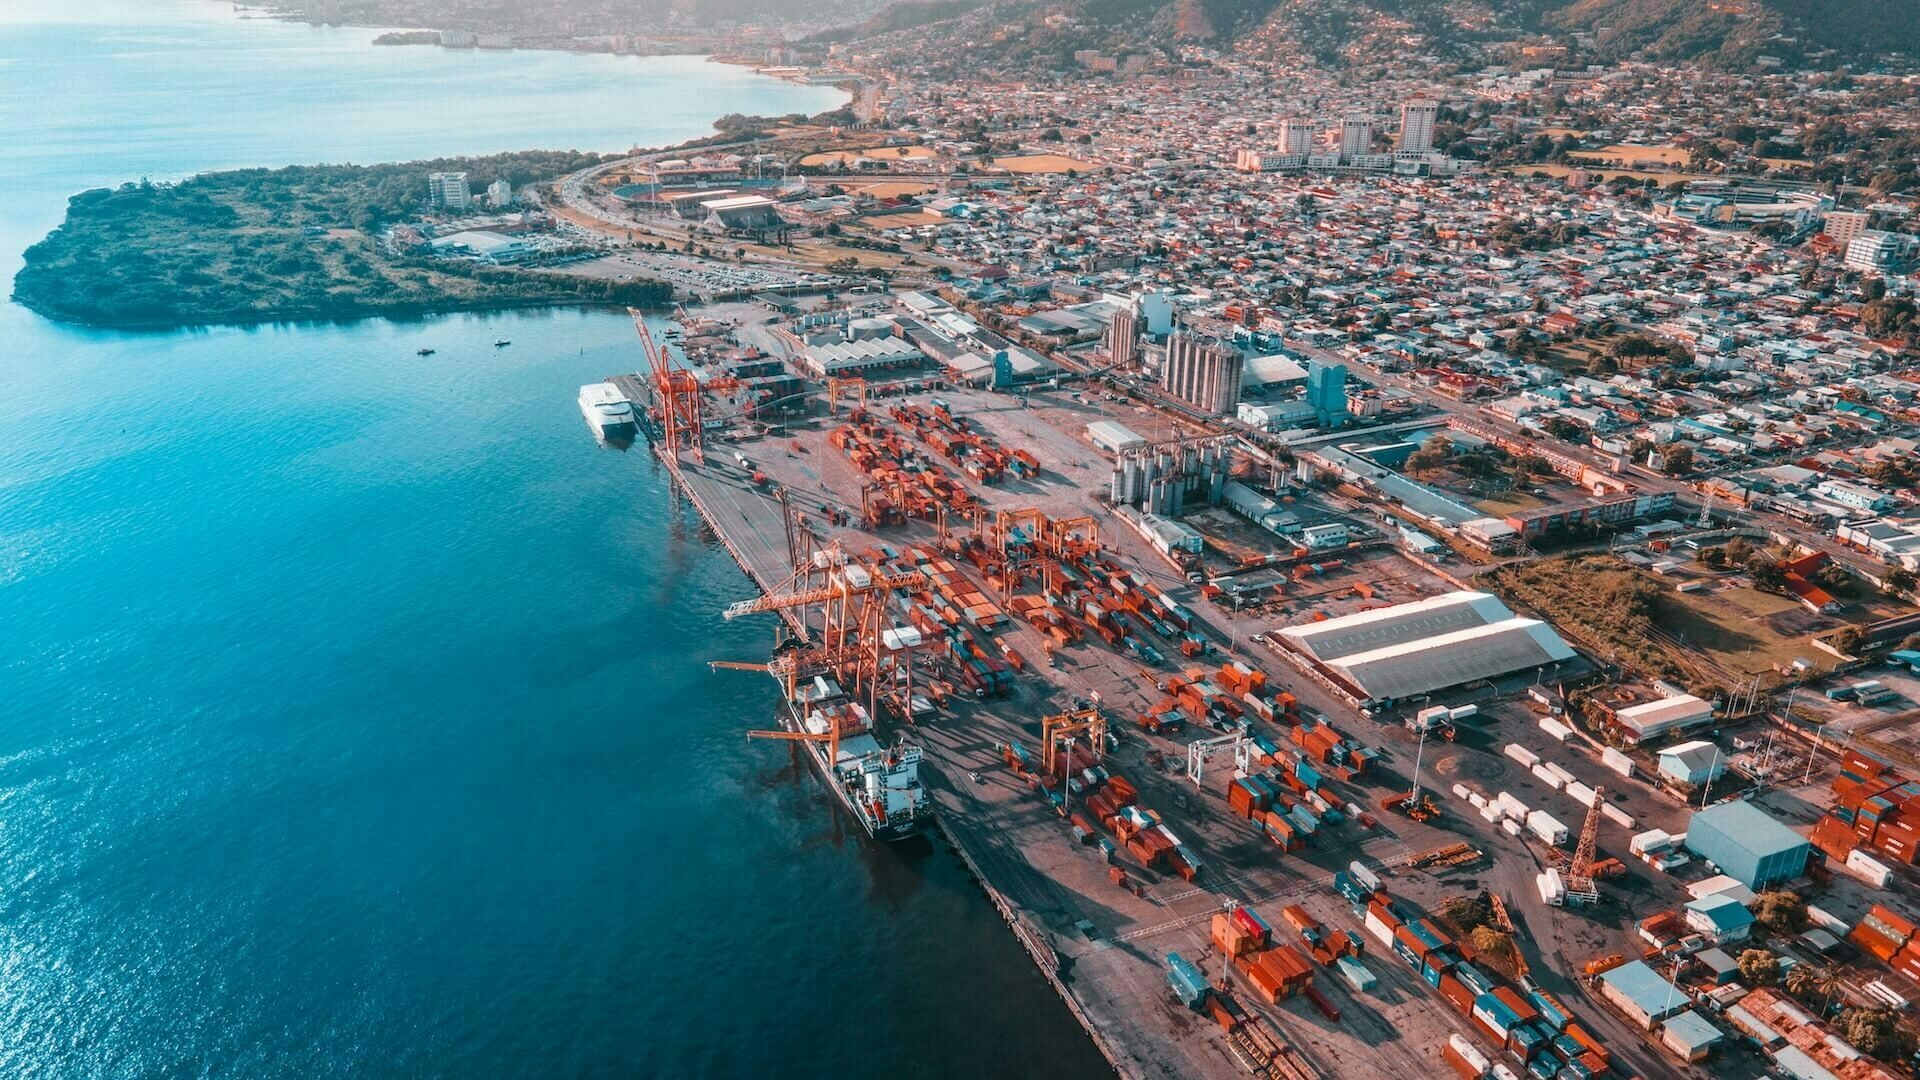 Vue aérienne du port de Trinidad, Espagne